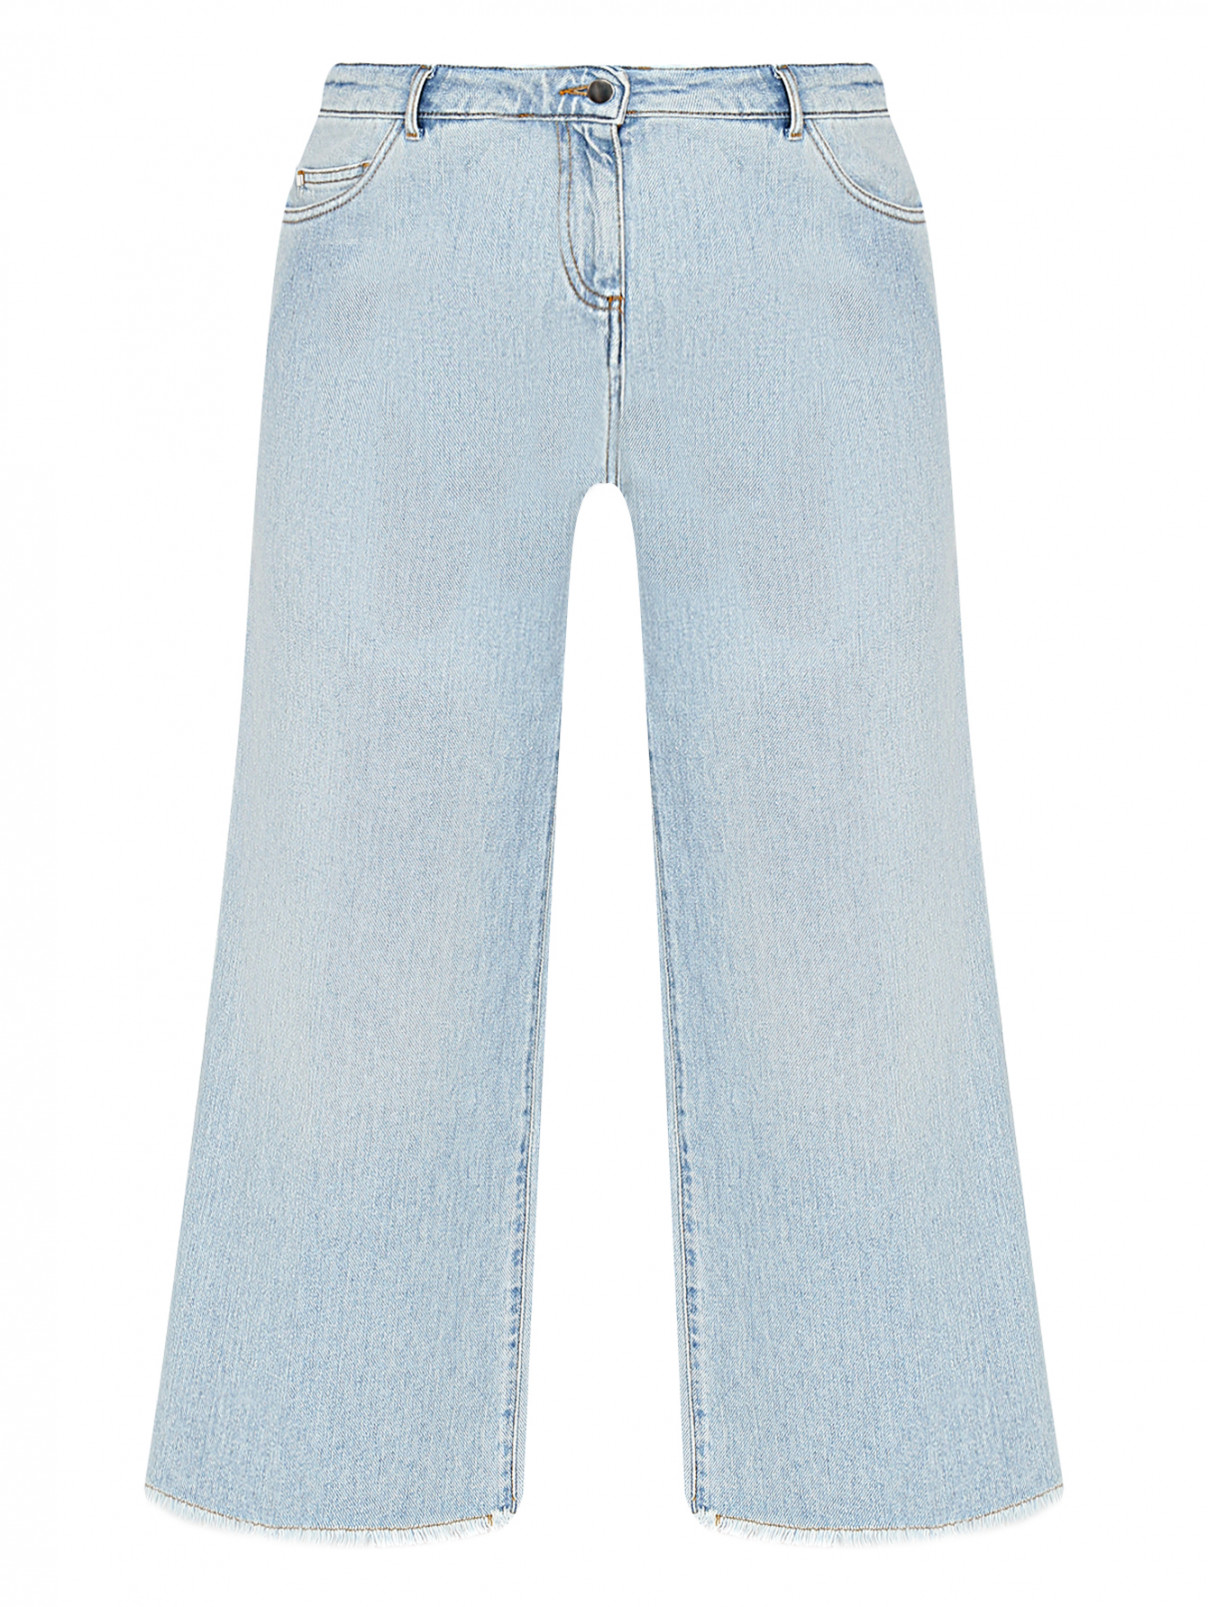 Укороченные джинсы с бахромой Persona by Marina Rinaldi  –  Общий вид  – Цвет:  Синий